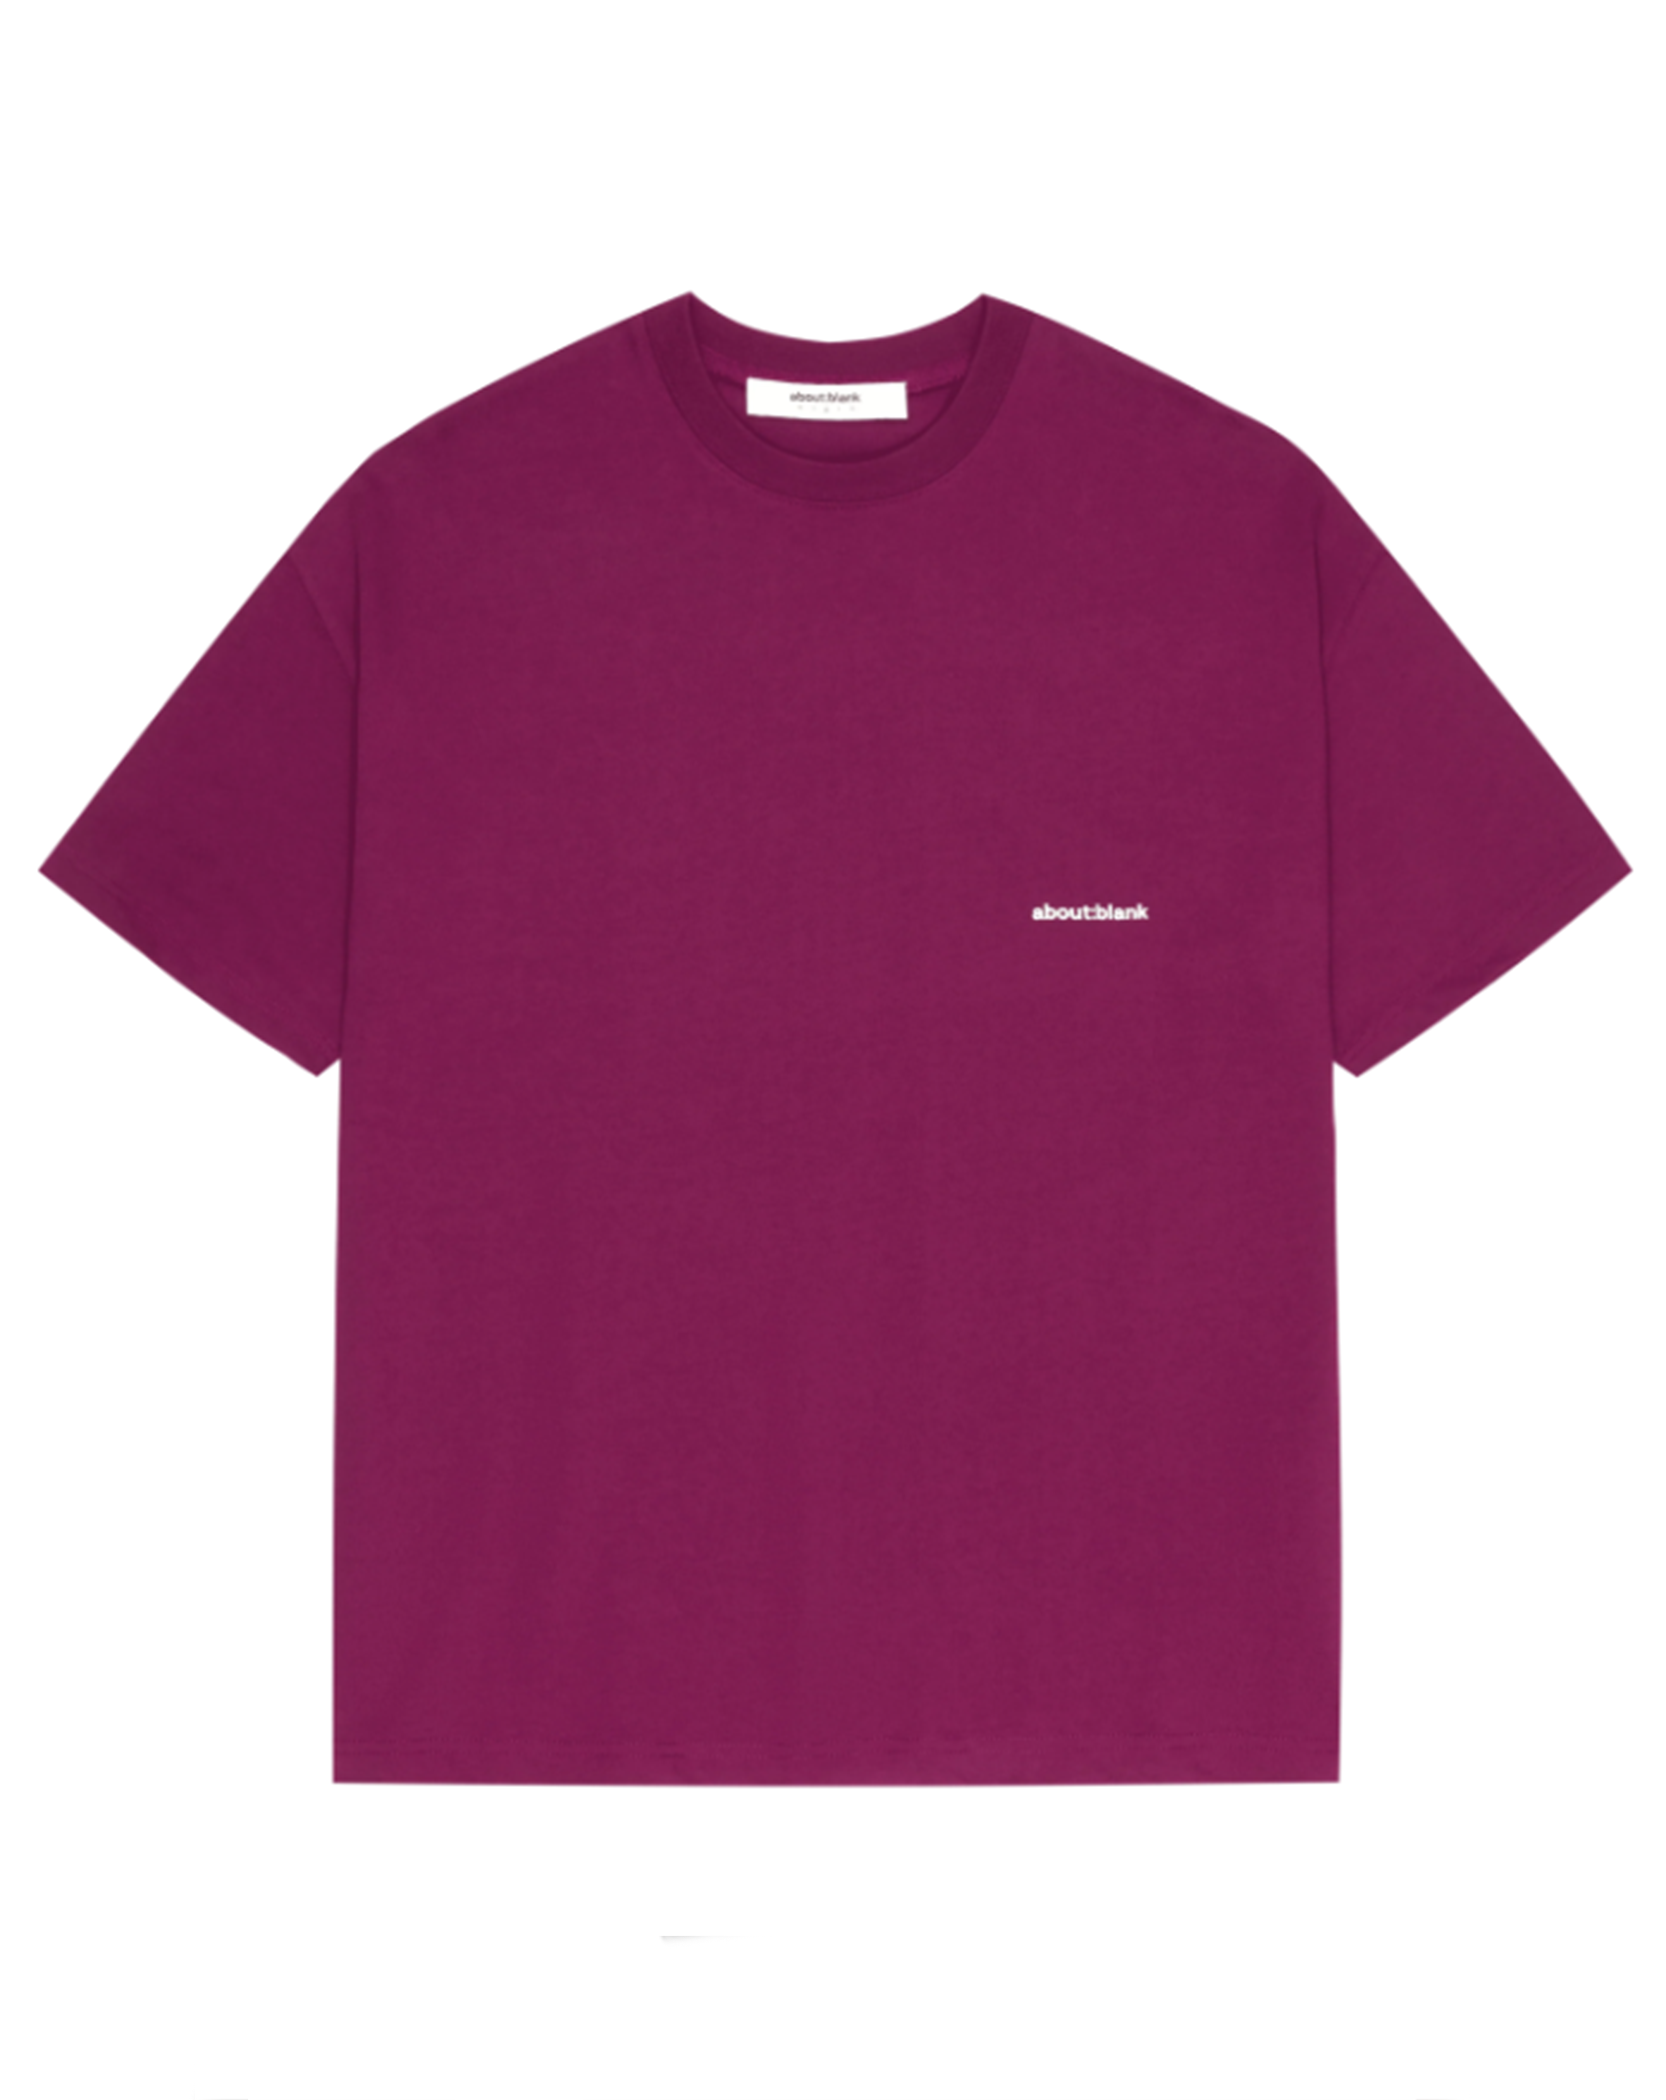 About blank - box t-shirt potion purple